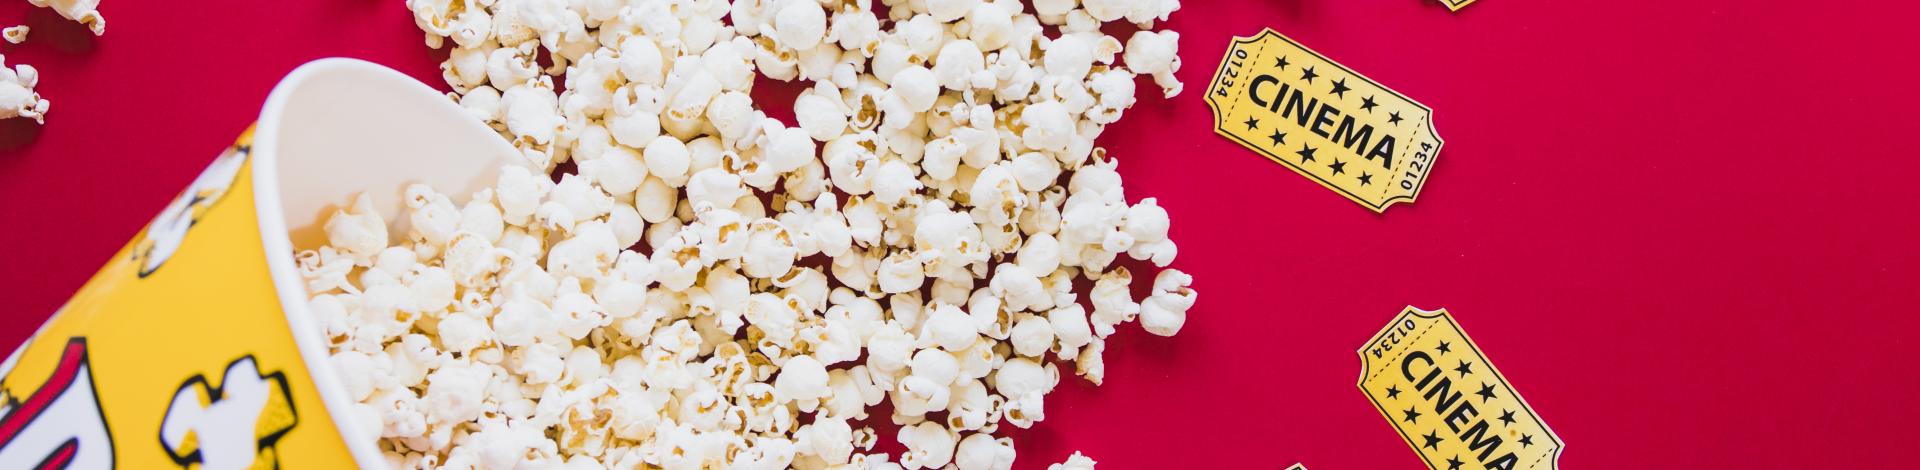 tasty-popcorn-red background-movie-theatre-cinema-tickets